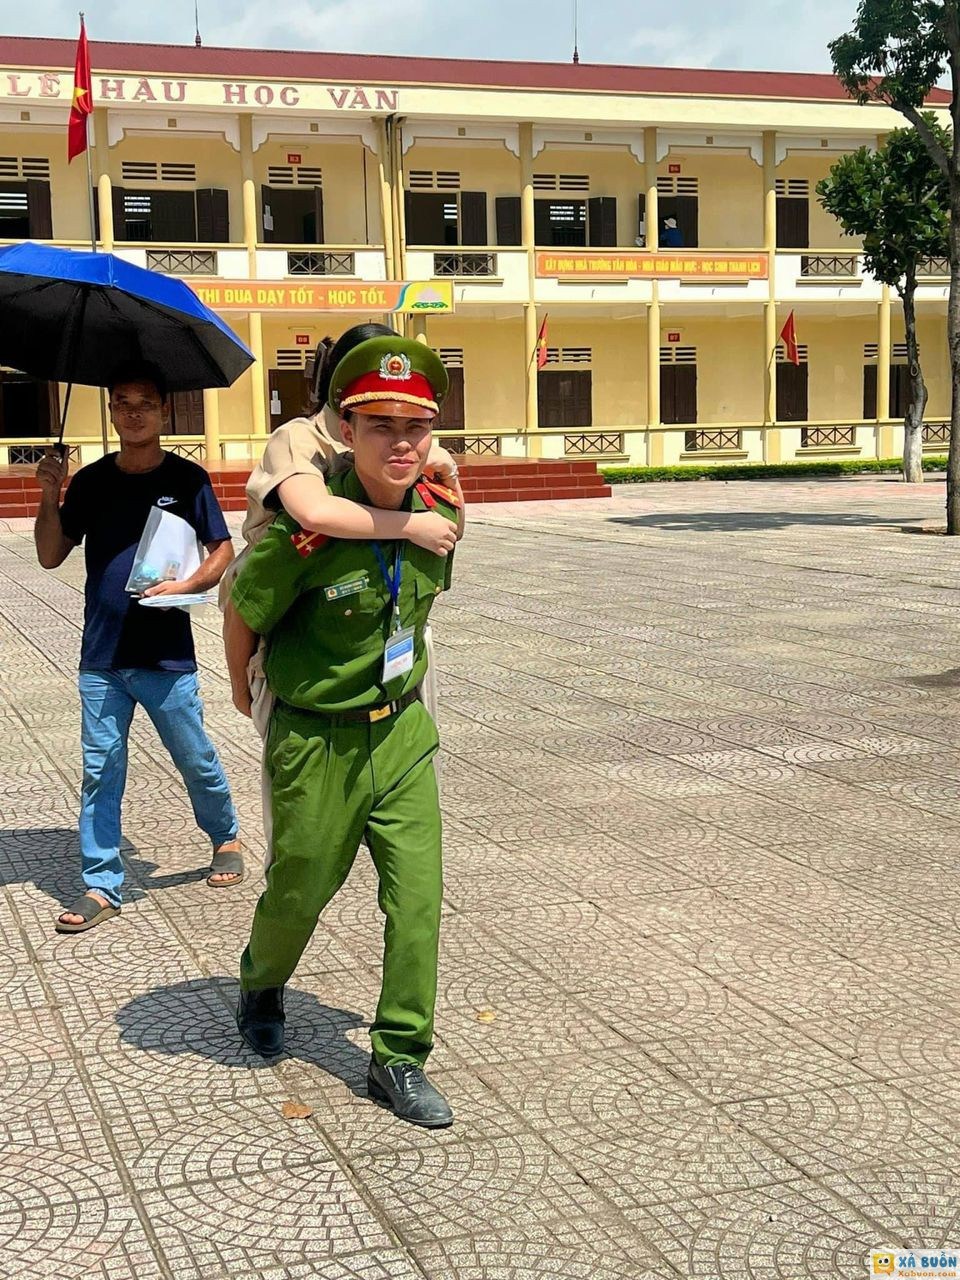 HÌNH ẢNH ĐẸP NHẤT HÔM NAY ❤ Đồng chí trung úy huyện Thanh Thủy - Phú Thọ cõng thí sinh bị k.h.uyết t.ật vào phòng thi ❤